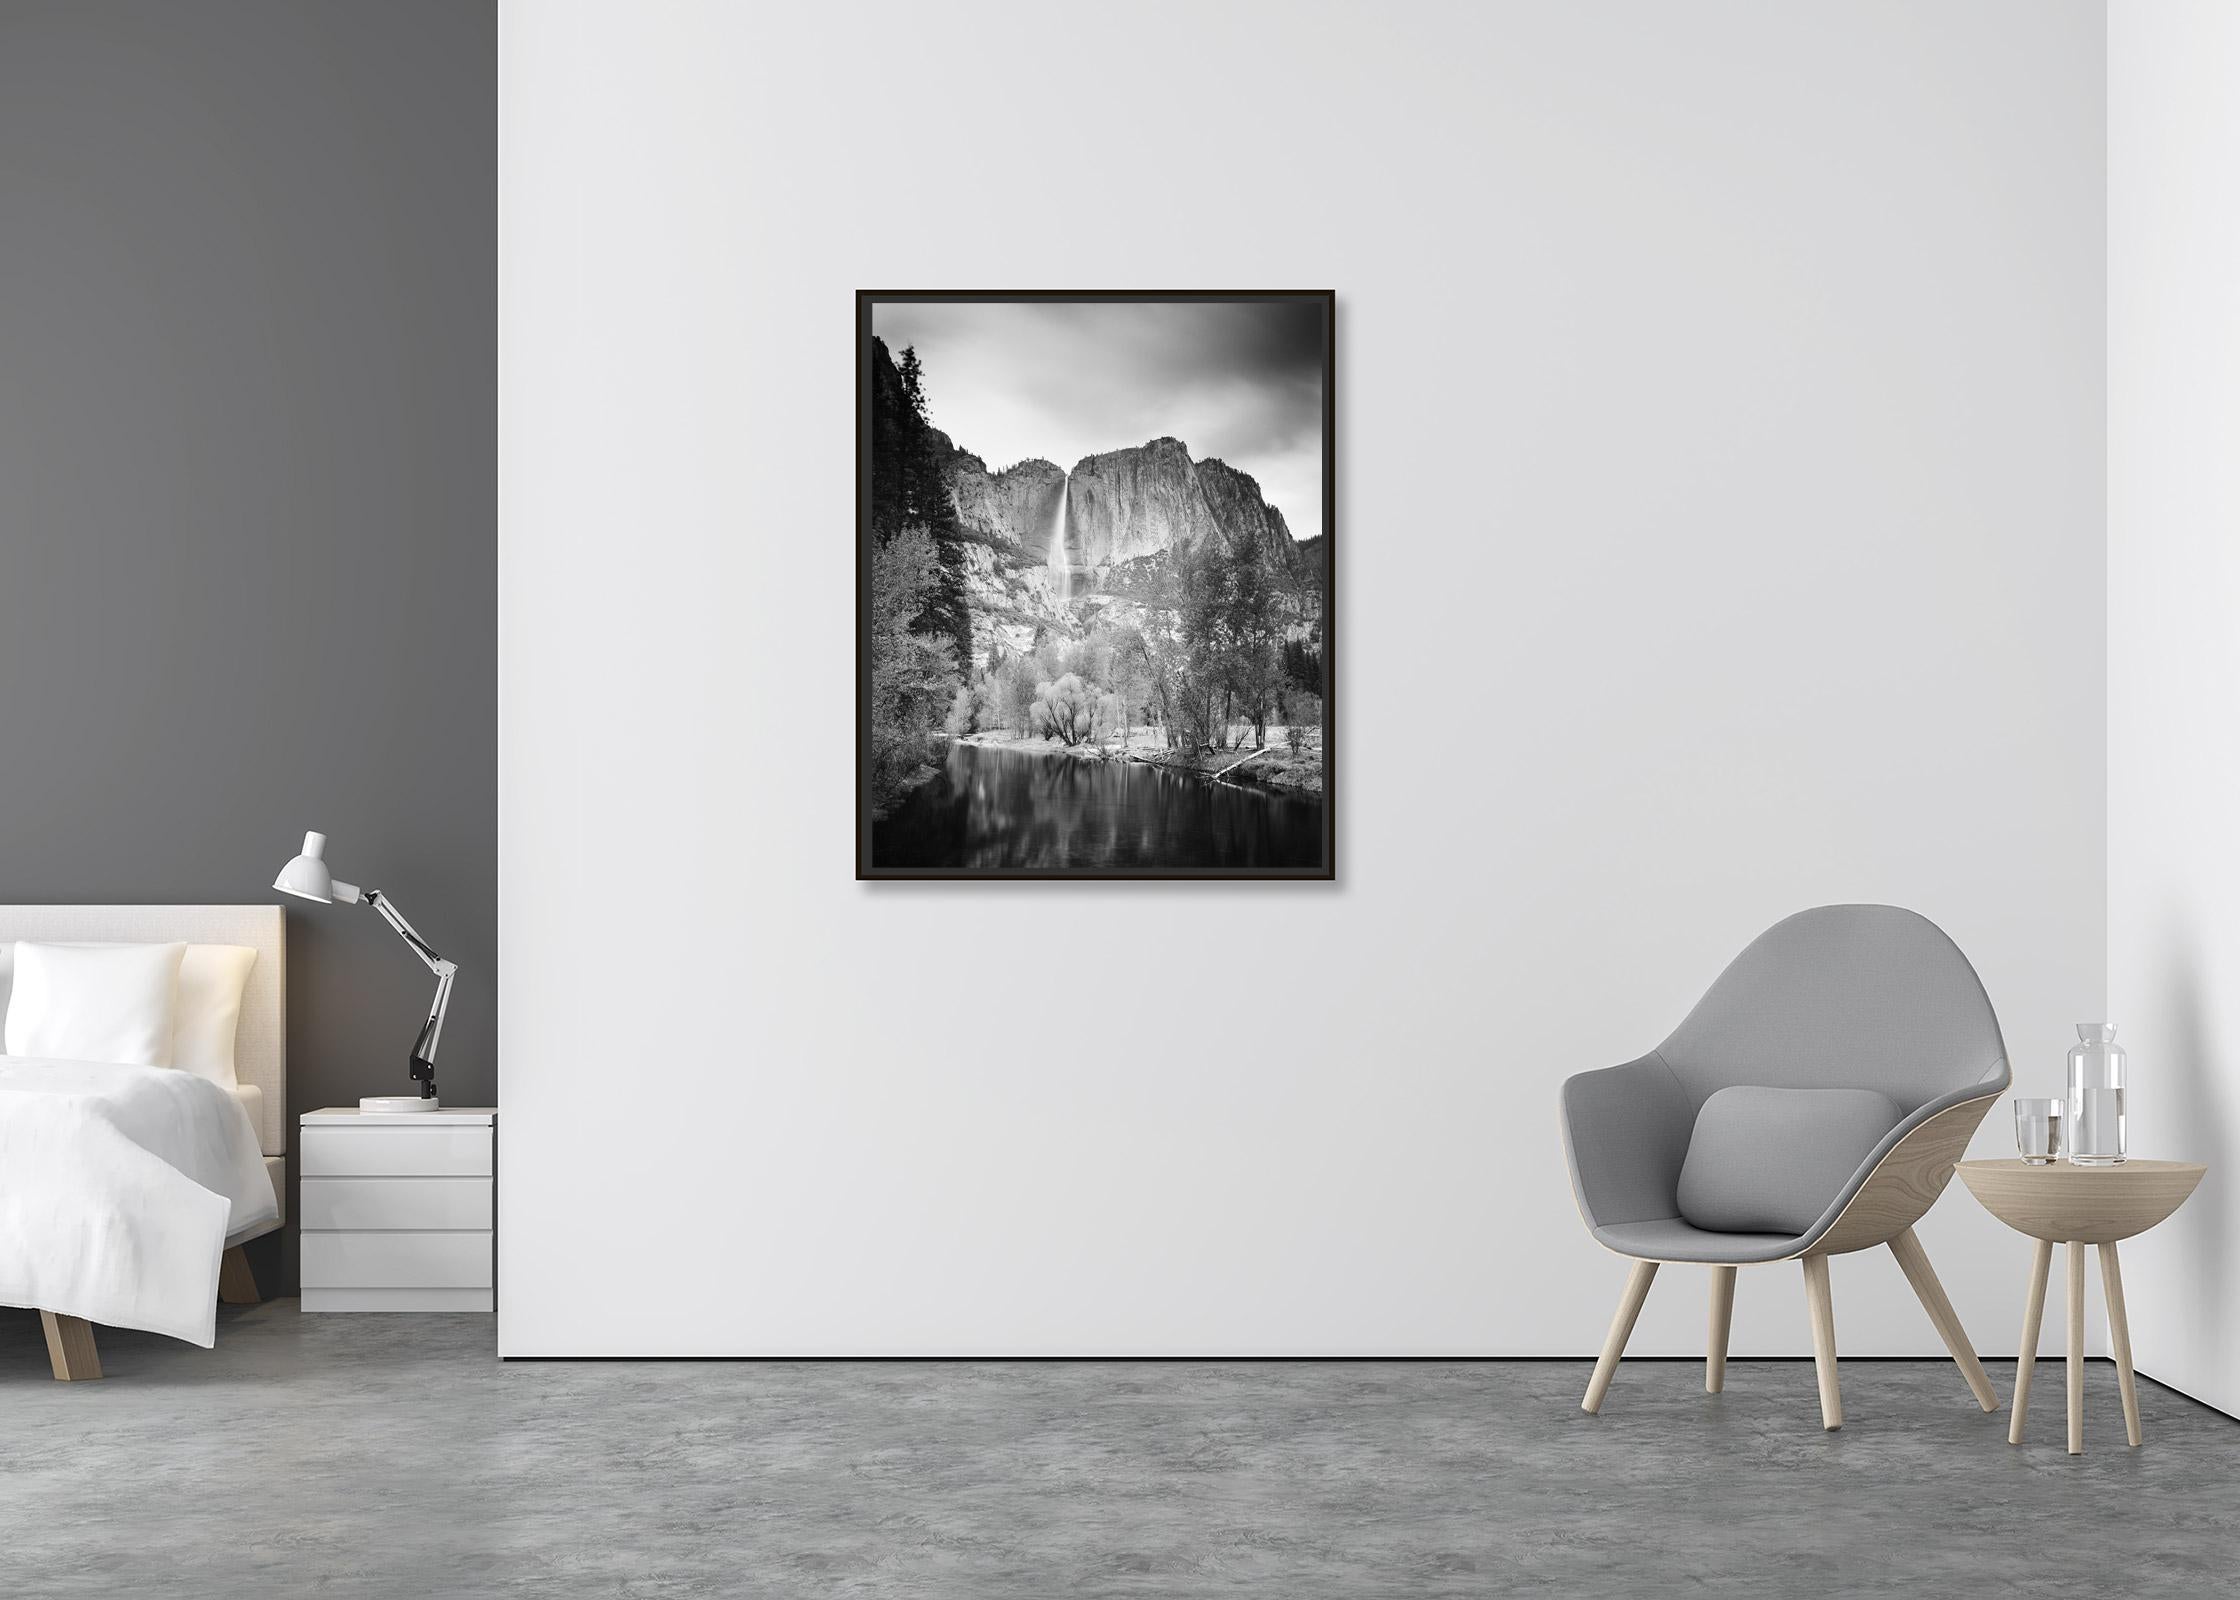 Upper Yosemite Falls, California, USA, Schwarz-Weiß-Fotografie, Landschaft (Zeitgenössisch), Photograph, von Gerald Berghammer, Ina Forstinger